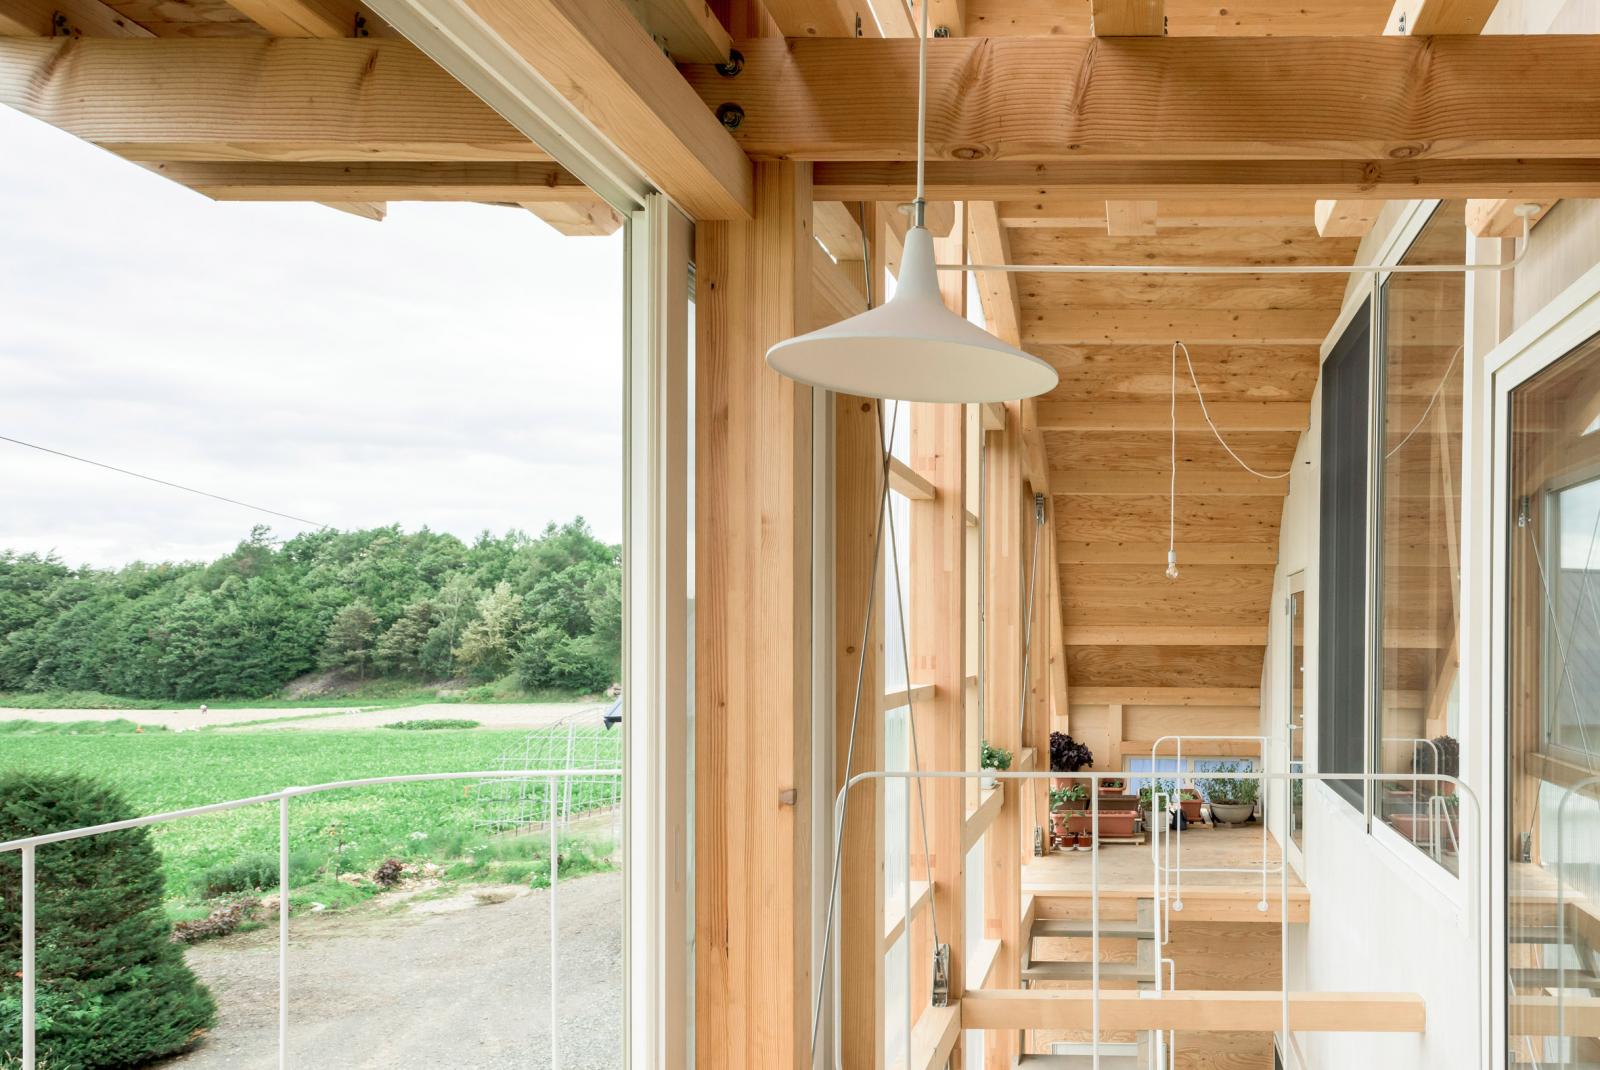 Hình ảnh một góc không gian thoáng sáng, sử dụng chất liệu gỗ chủ đạo trong nhà 2 tầng ở Nhật.